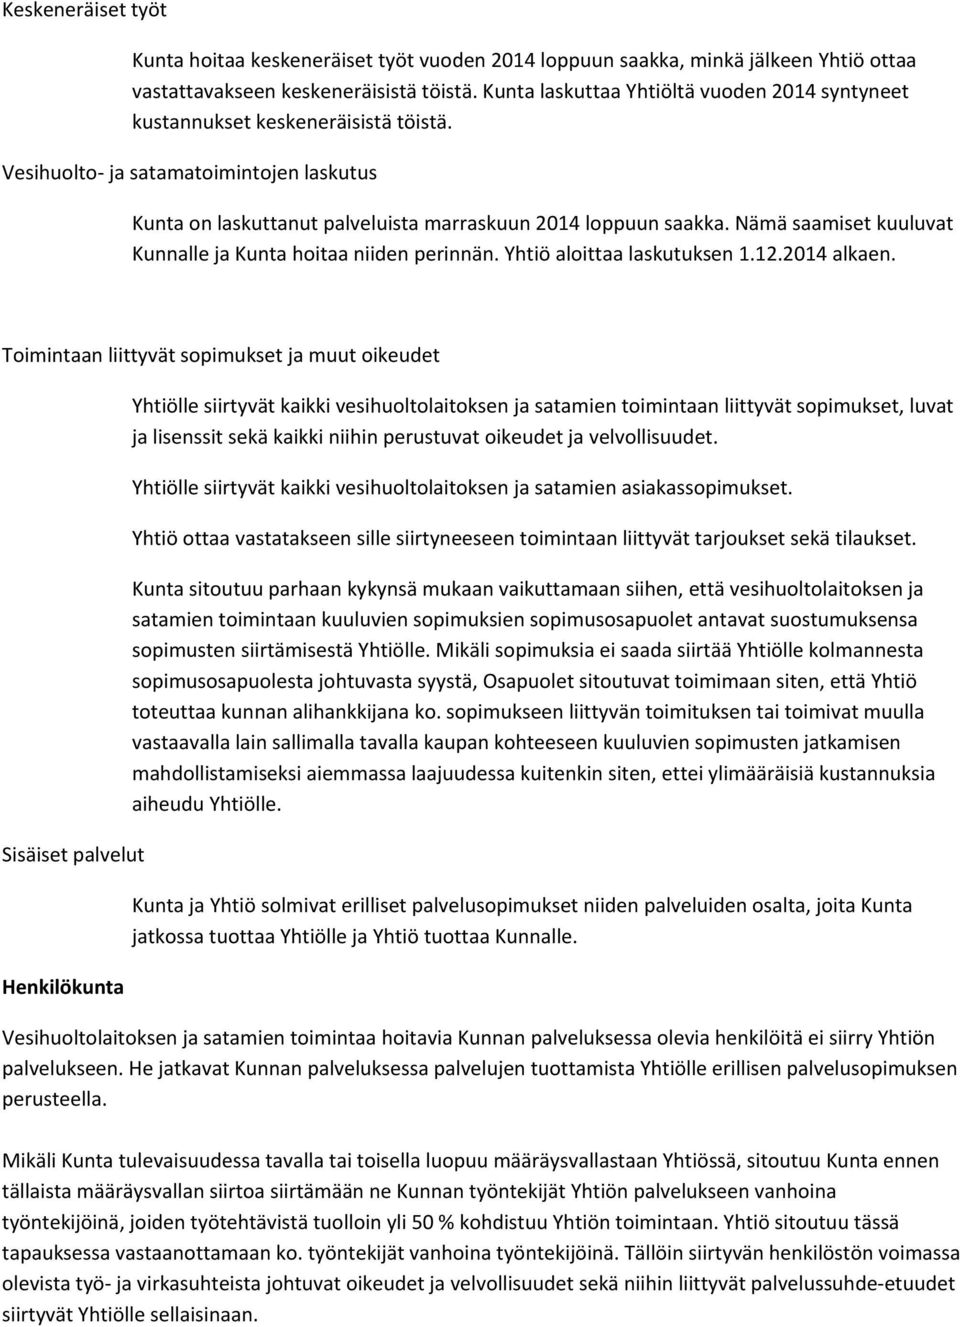 Nämä saamiset kuuluvat Kunnalle ja Kunta hoitaa niiden perinnän. Yhtiö aloittaa laskutuksen 1.12.2014 alkaen.